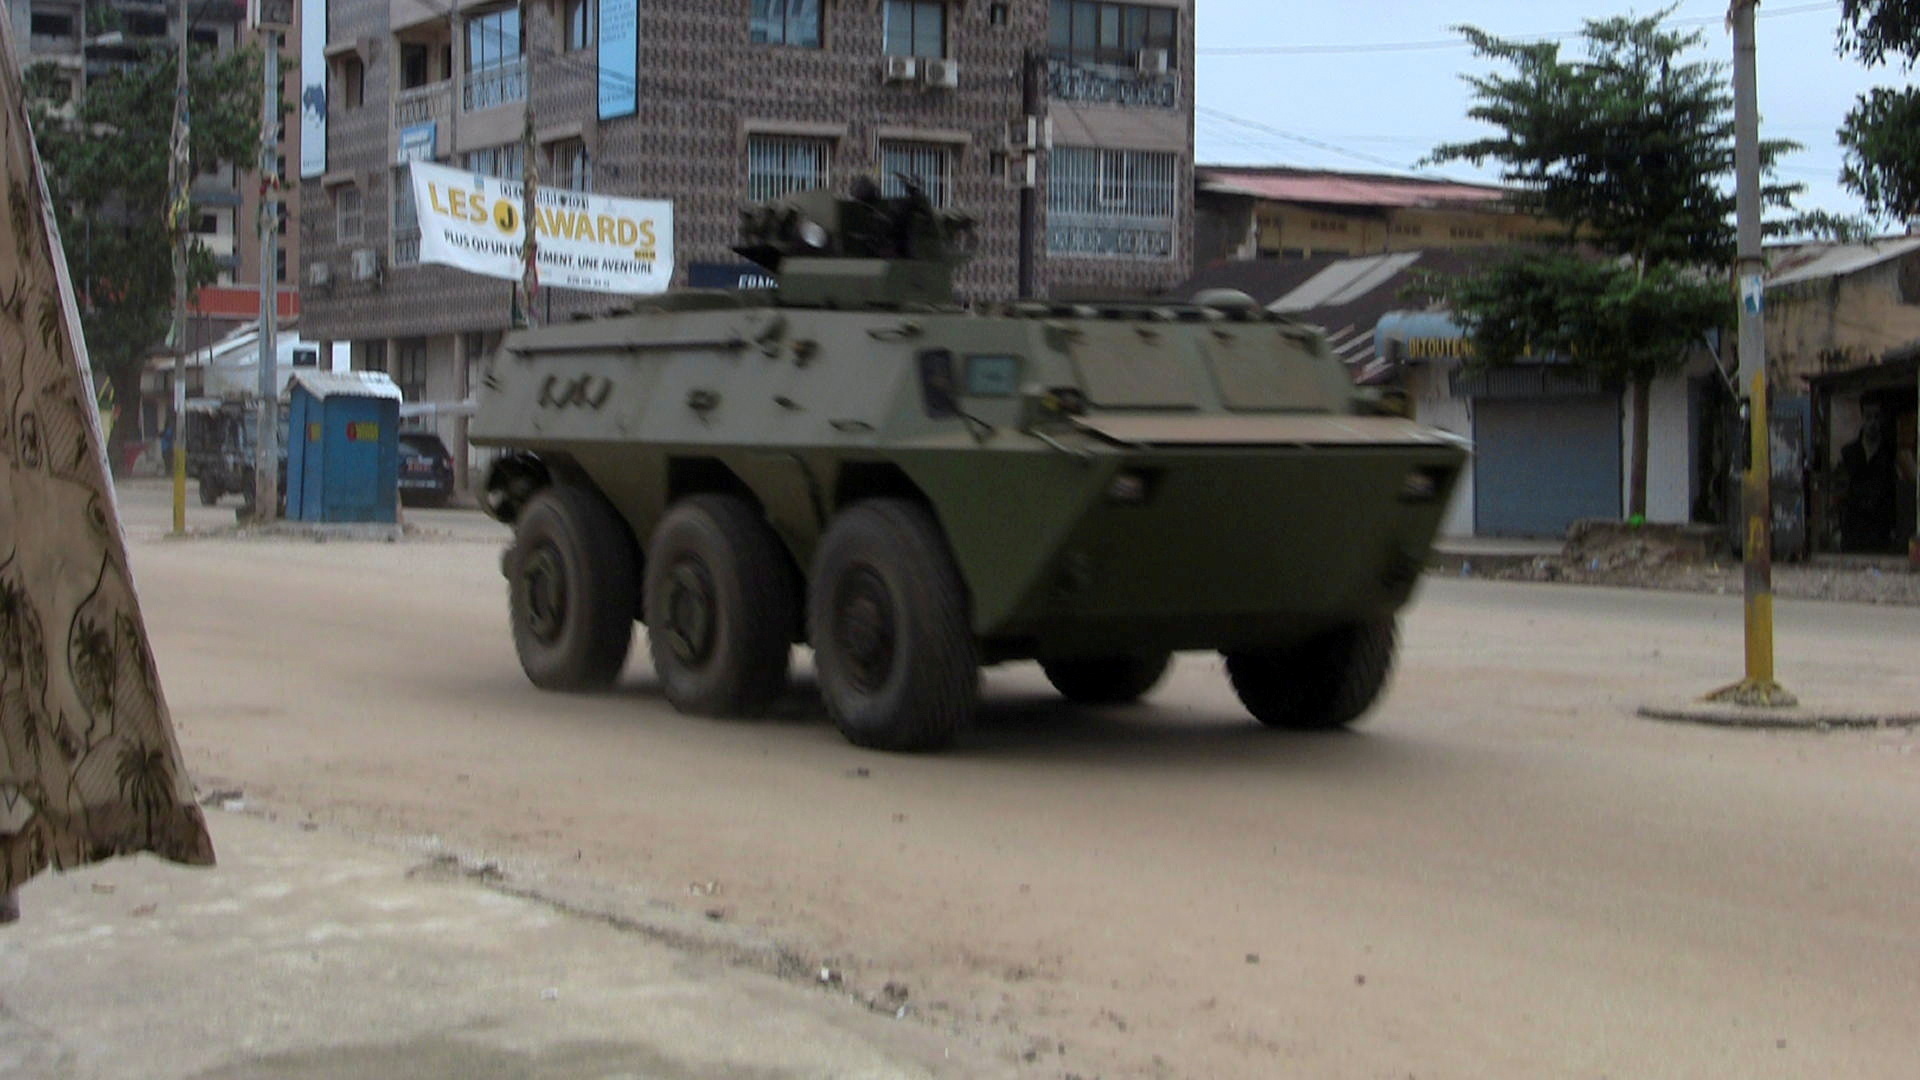 Γουινέα – Πραξικόπημα των ειδικών δυνάμεων και σύλληψη προέδρου της χώρας [Video]